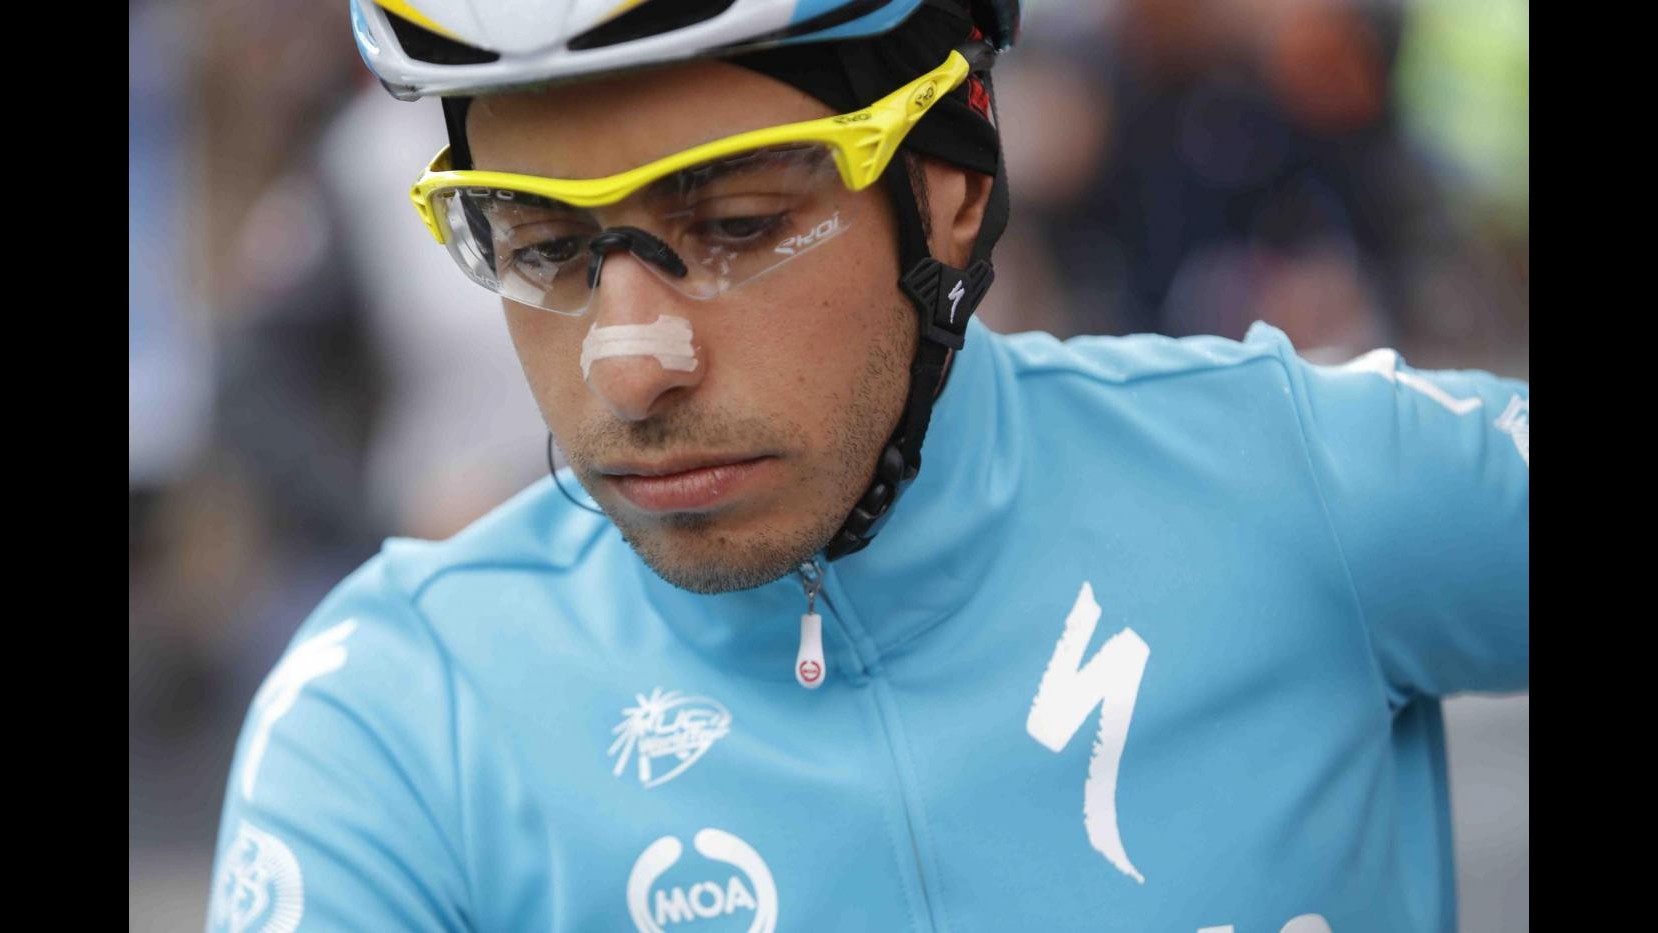 Giro d’Italia, Aru: Aver superato momenti difficili è mia vera vittoria